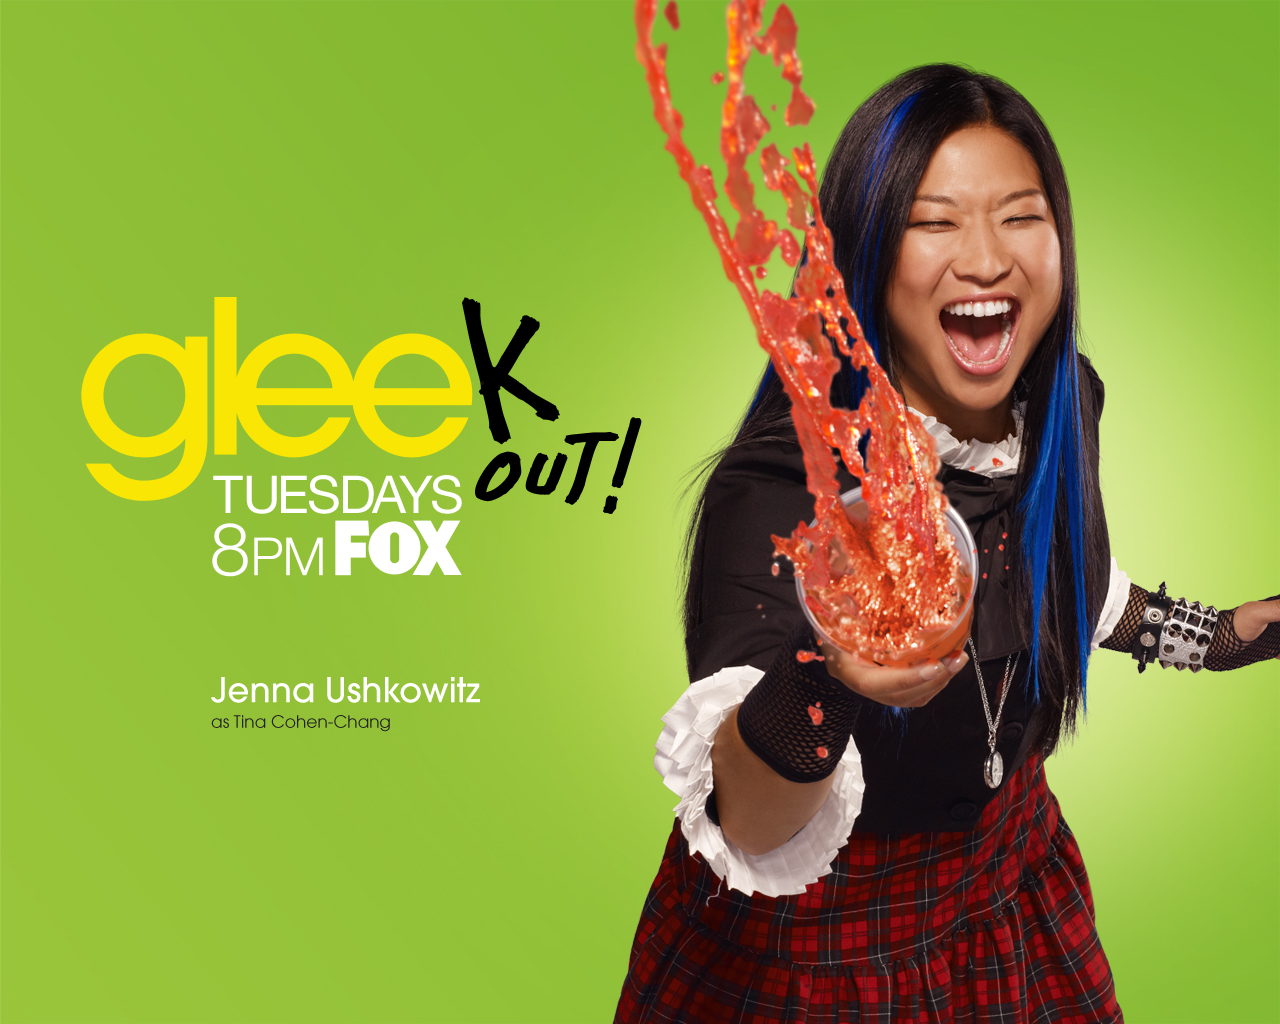 Baixar papel de parede para celular de Programa De Tv, Glee: Em Busca Da Fama gratuito.